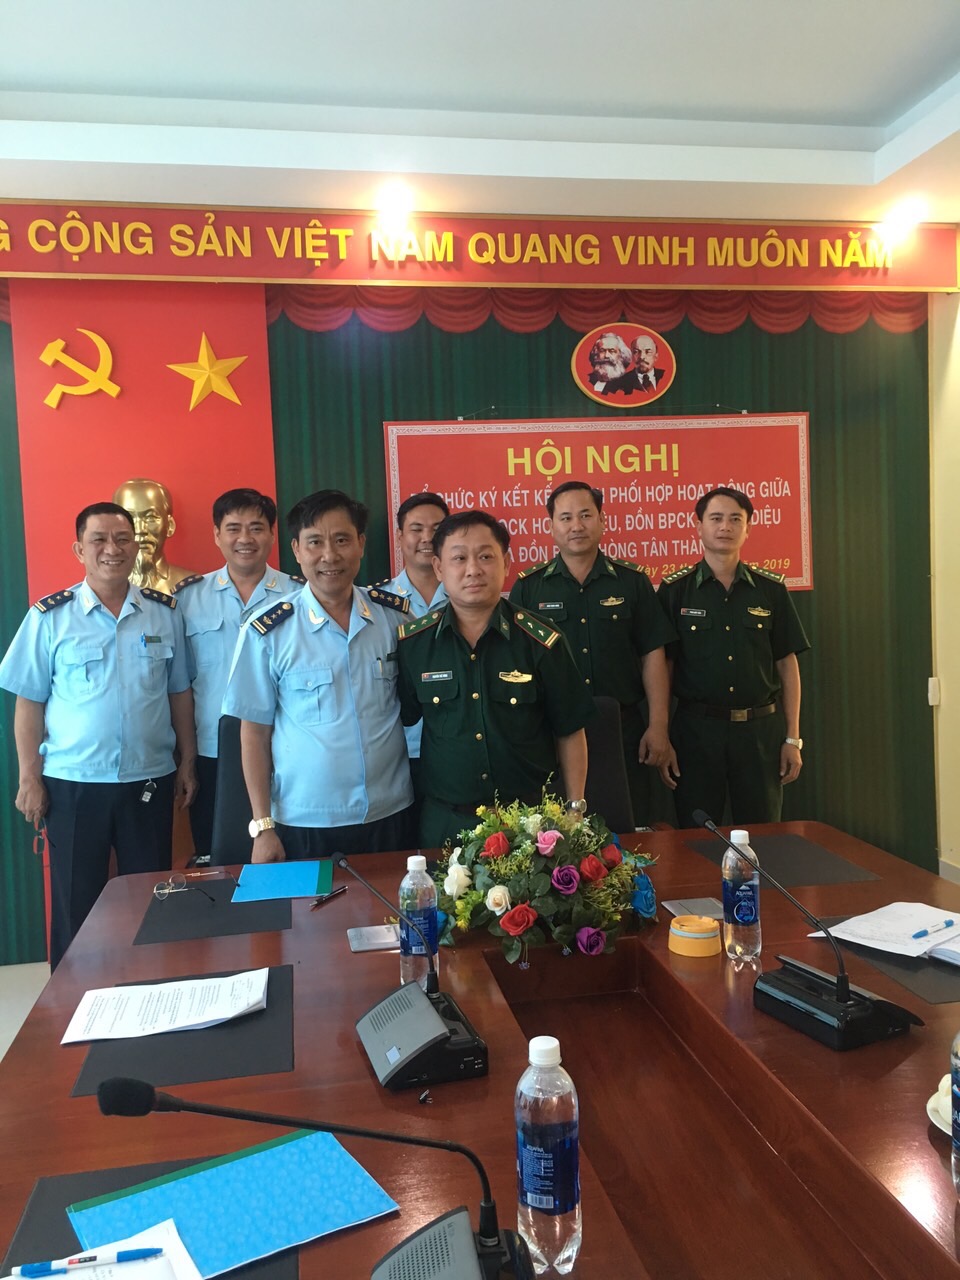 Chi cục HQCK Hoàng Diêu và Đồn Biên phòng CK Hoàng Diệu, Đồn Biên phòng Tân Thành ký kết kế hoạch phối hợp.